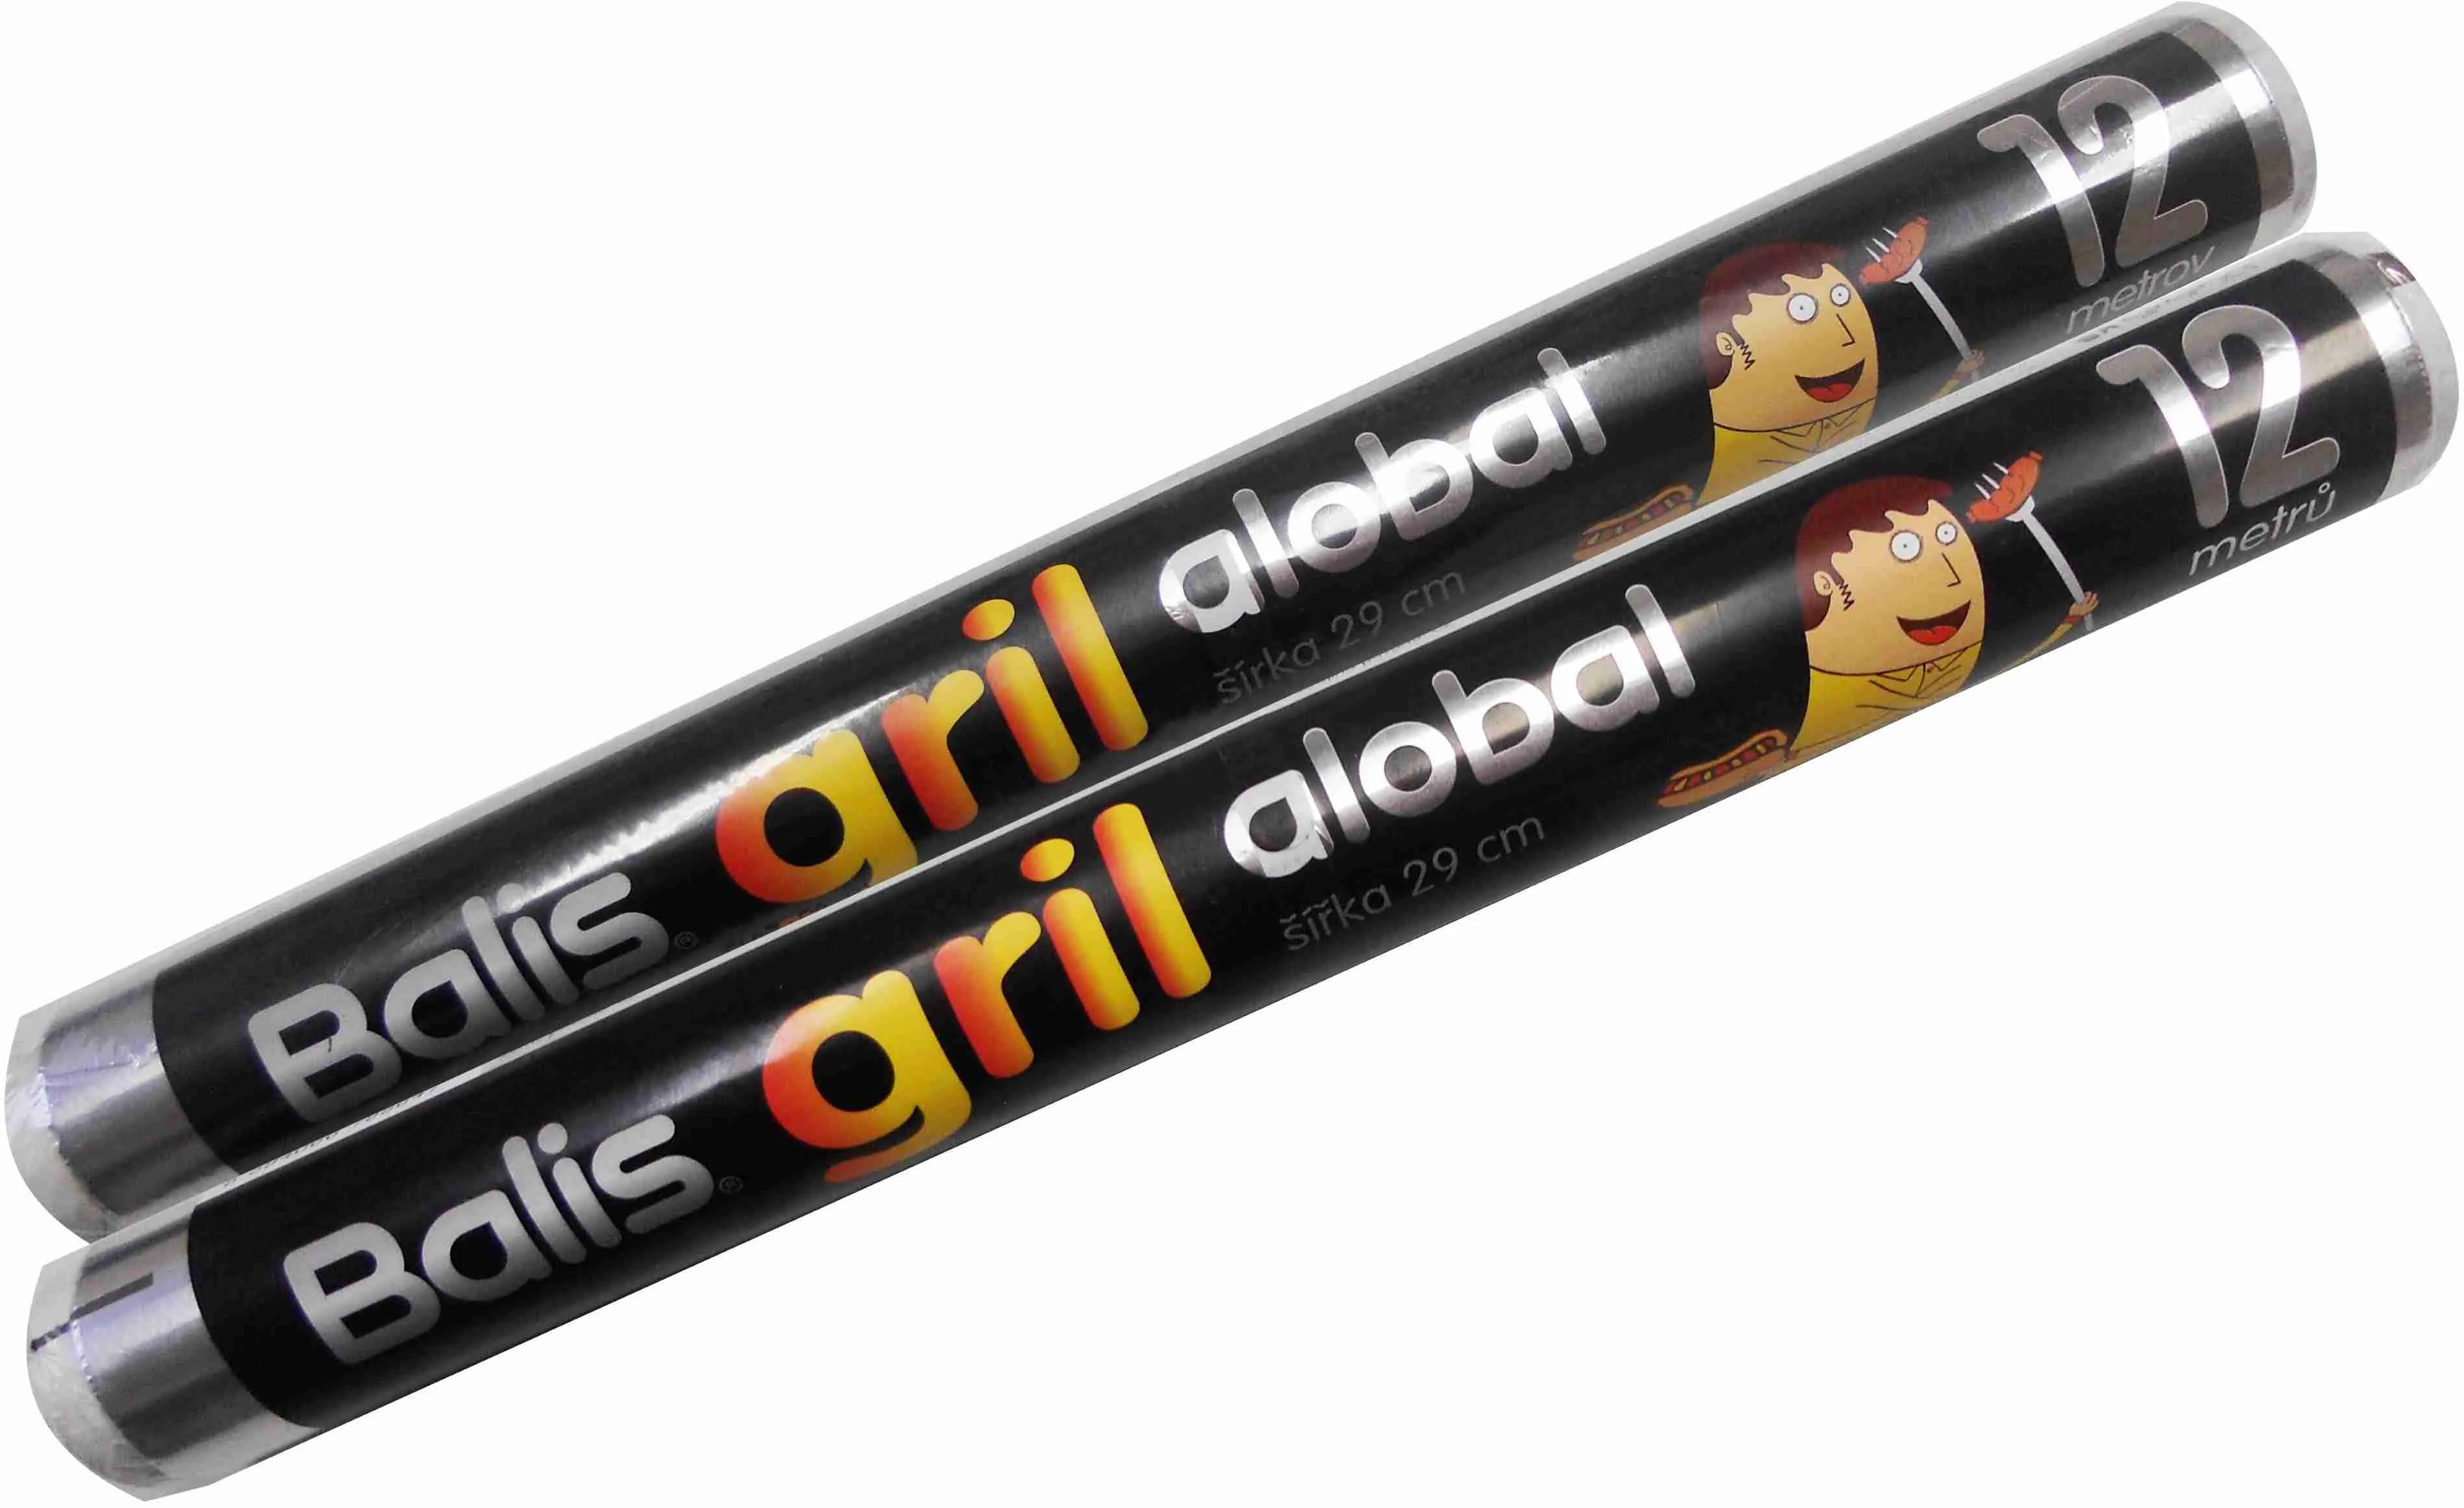 BALIS Alobal gril 12m (balis) 1×1 ks, alobal